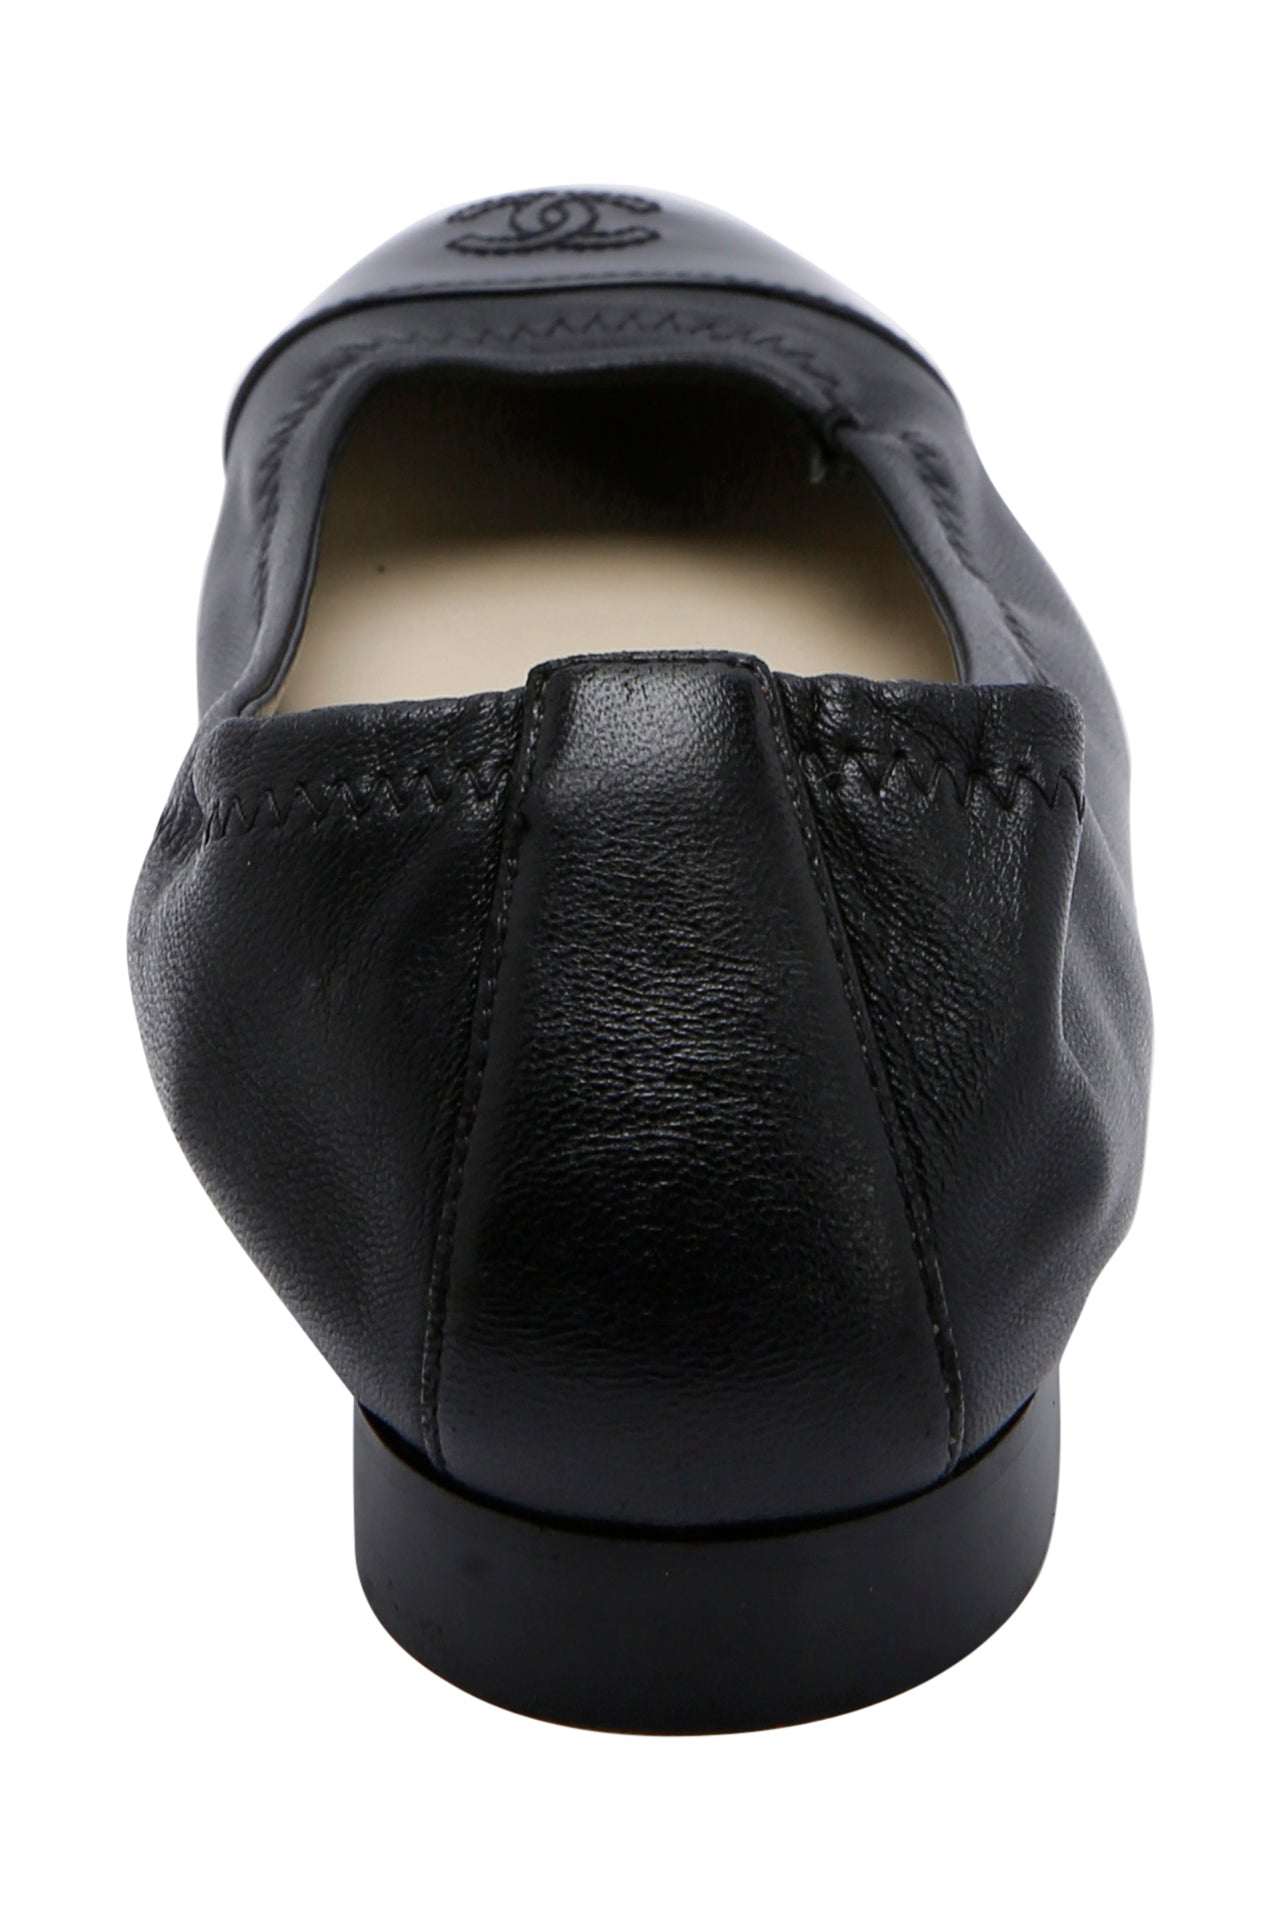 Chanel Patent Leather Ballet Flats Size EU 39C